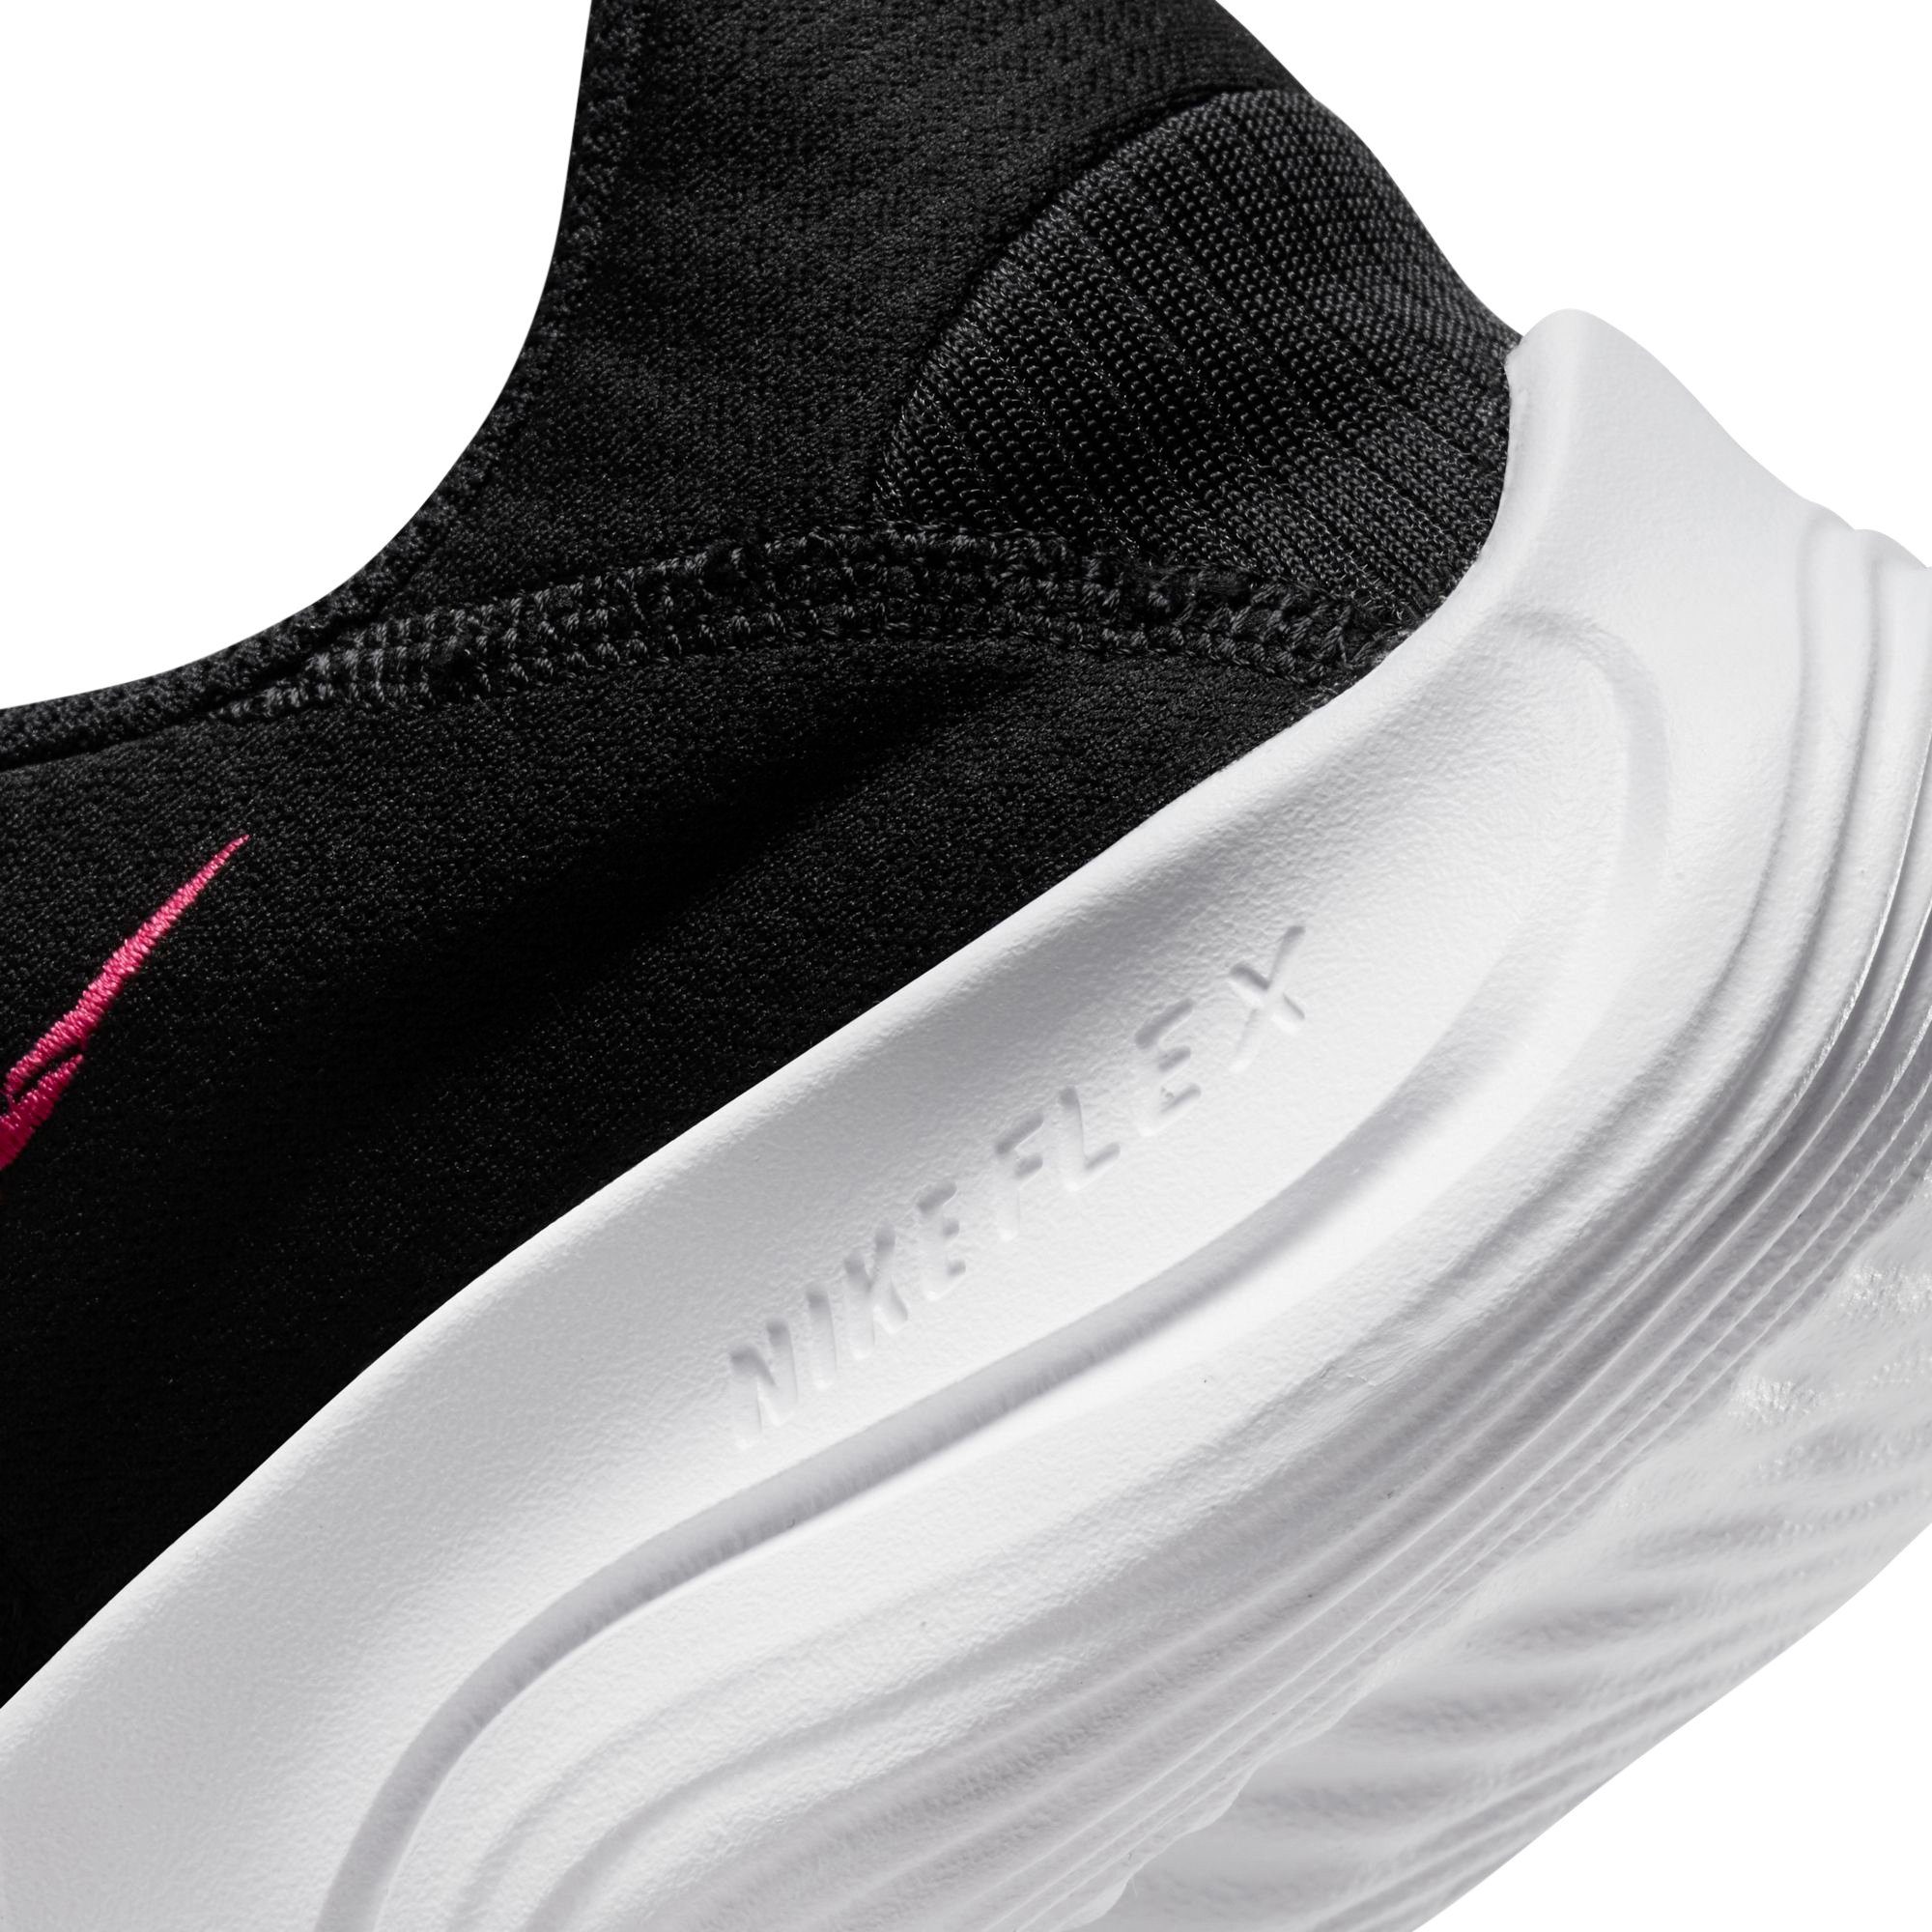 NEXT RUN FLEX NATURE Laufschuh schwarz-pink Nike EXPERIENCE 11